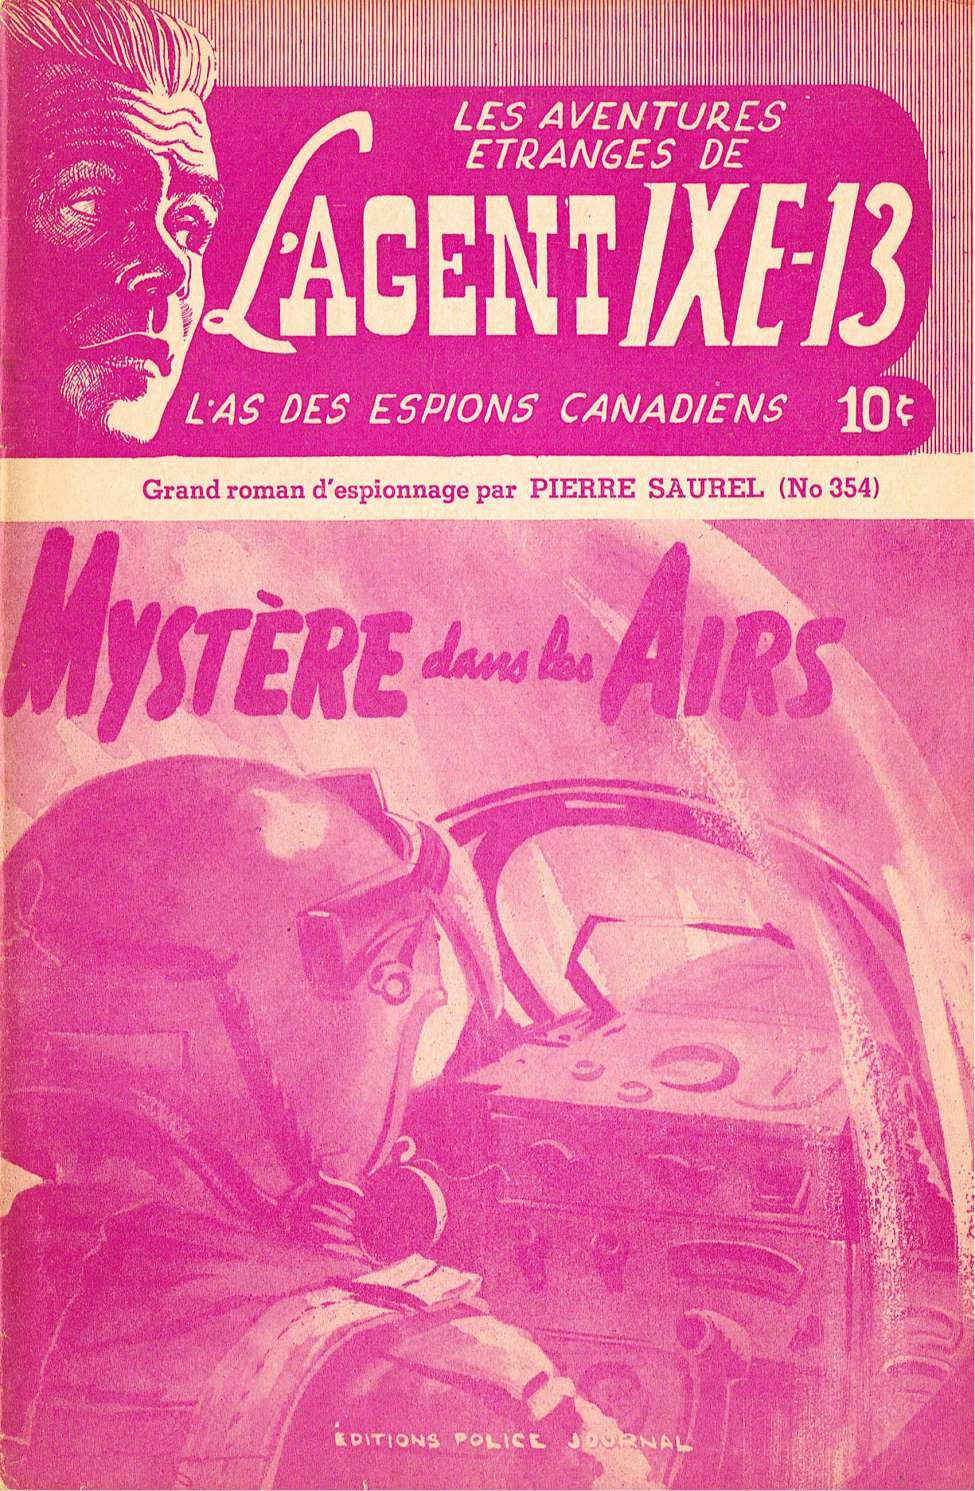 Book Cover For L'Agent IXE-13 v2 354 - Mystère dans les air